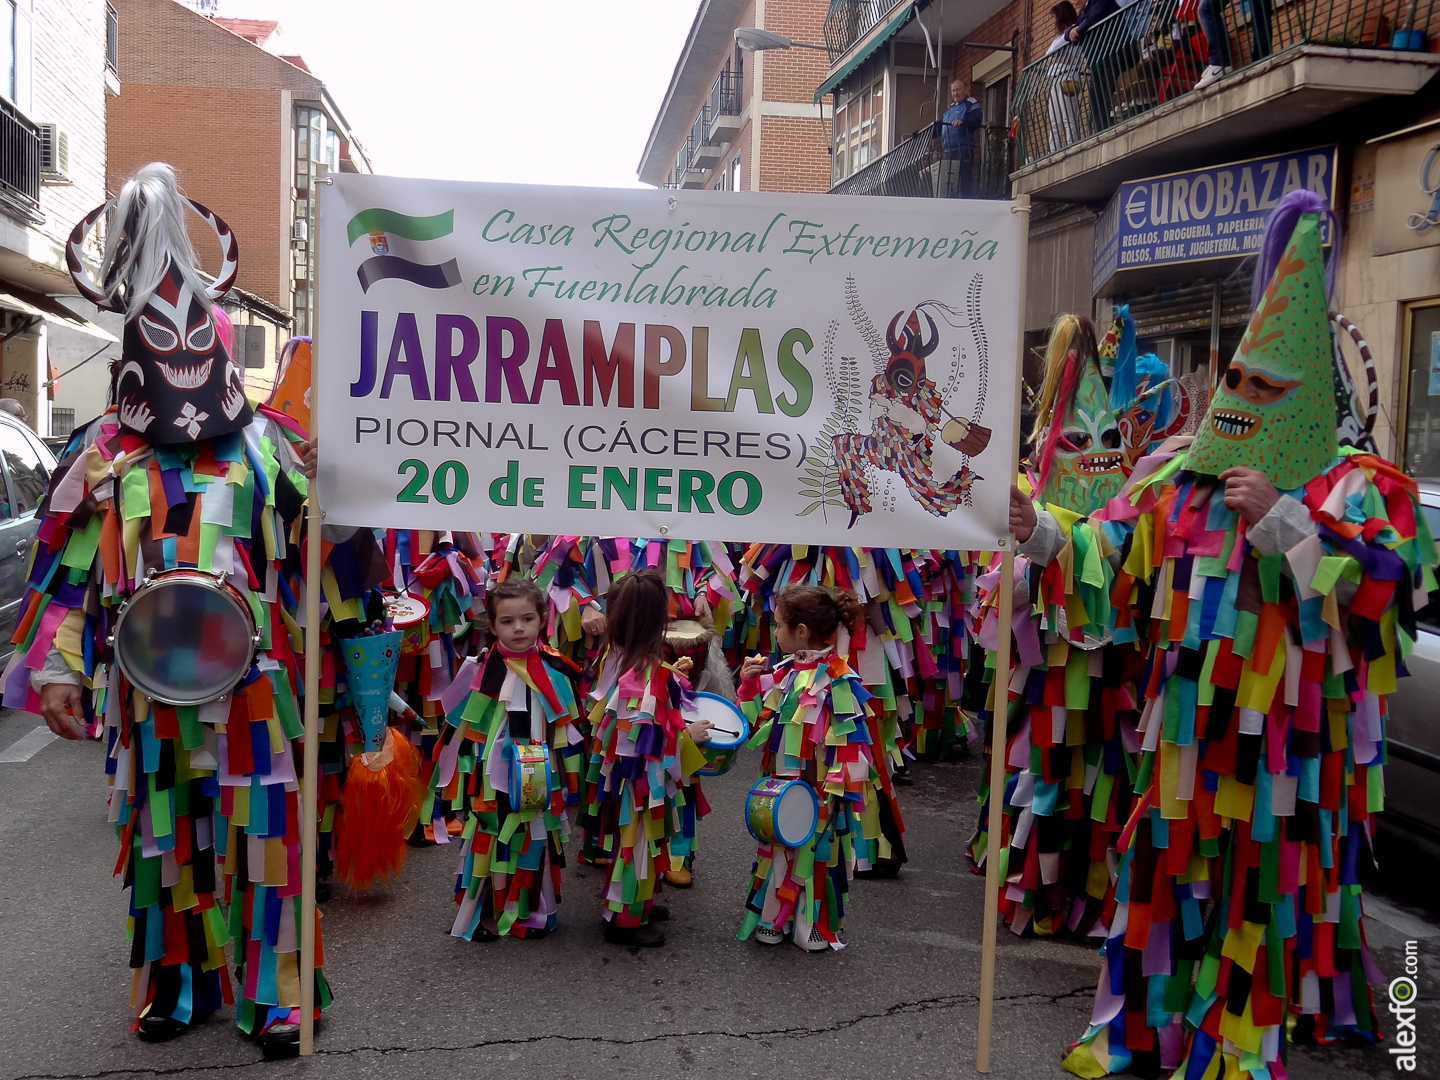 Carnaval de fuenlabrada 2014